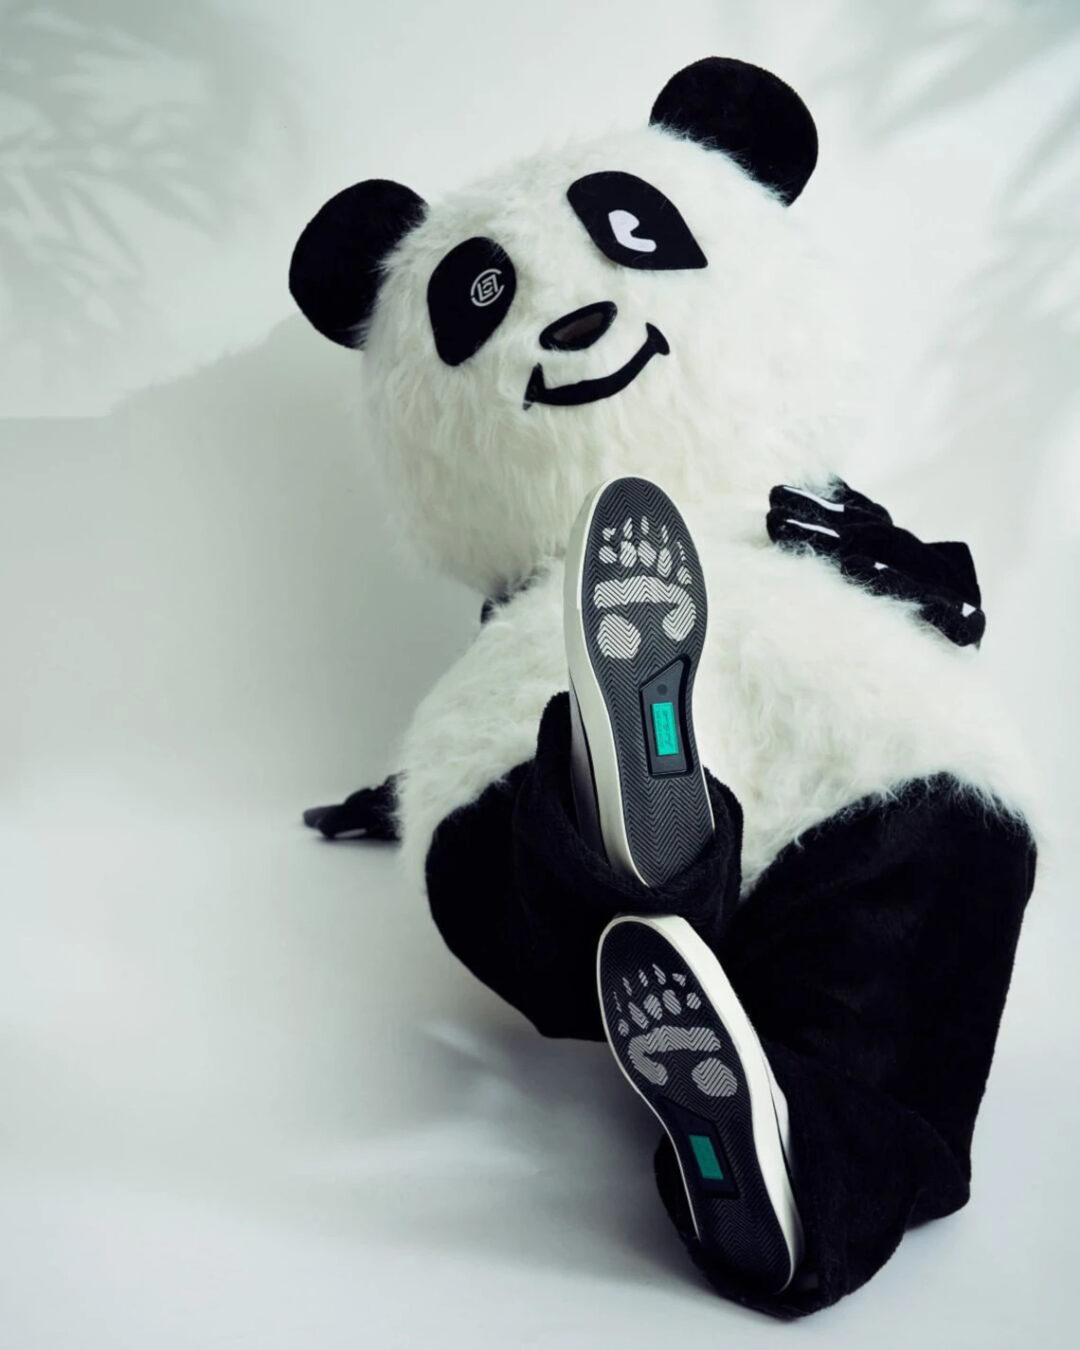 【海外 11/11、11/18 発売】CLOT x CONVERSE JACK PURCELL OX/Chuck 70 HI “Panda” (クロット コンバース ジャックパーセル/チャック 70 ハイ “パンダ”)